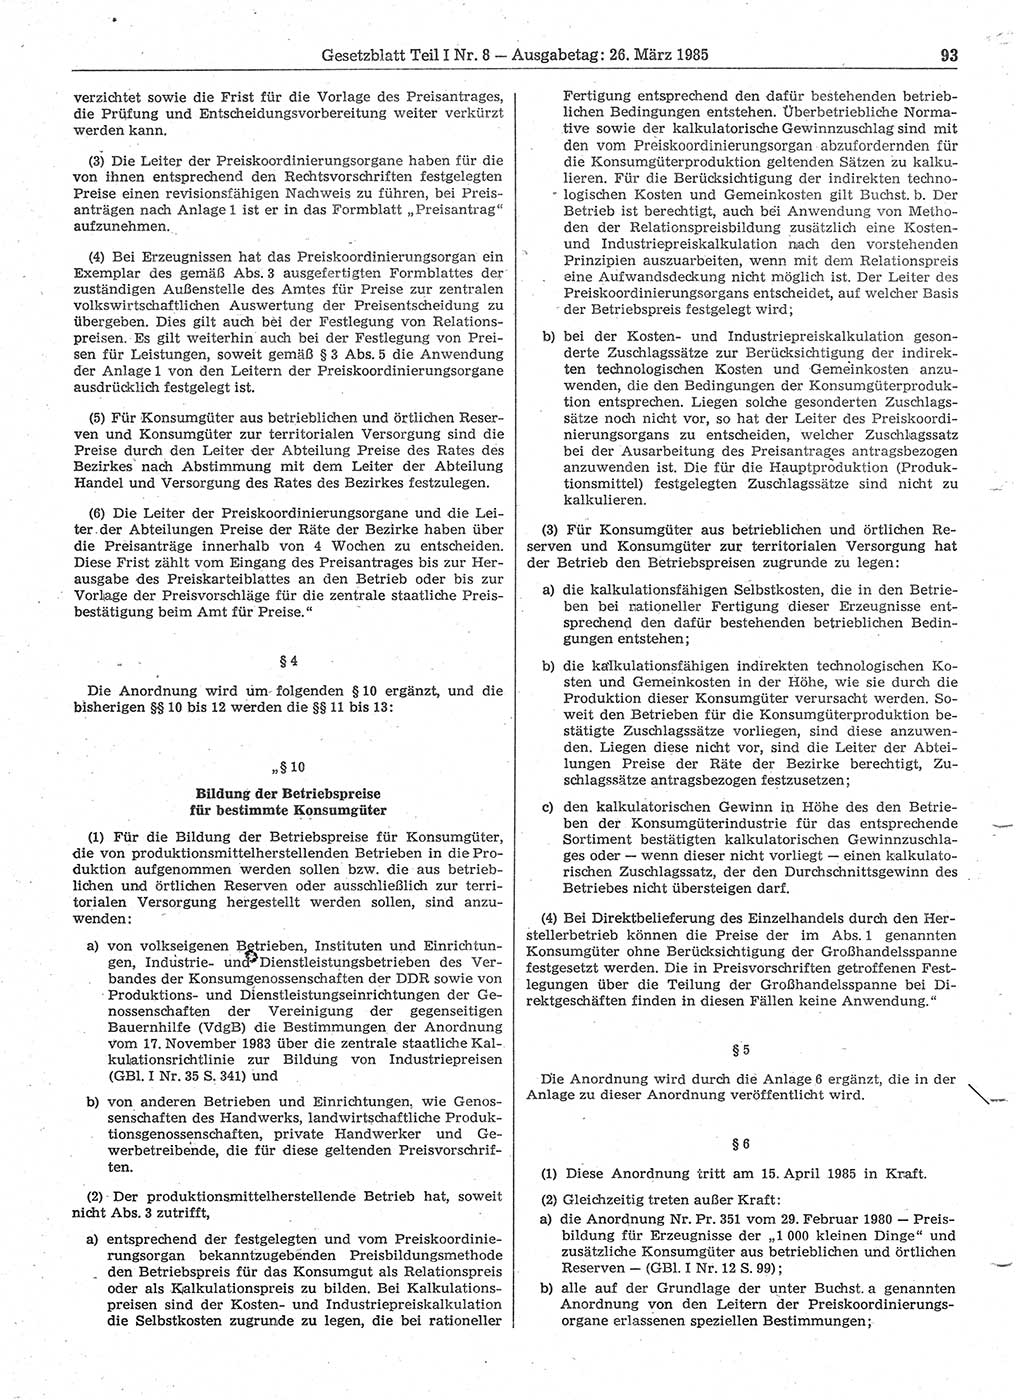 Gesetzblatt (GBl.) der Deutschen Demokratischen Republik (DDR) Teil Ⅰ 1985, Seite 93 (GBl. DDR Ⅰ 1985, S. 93)